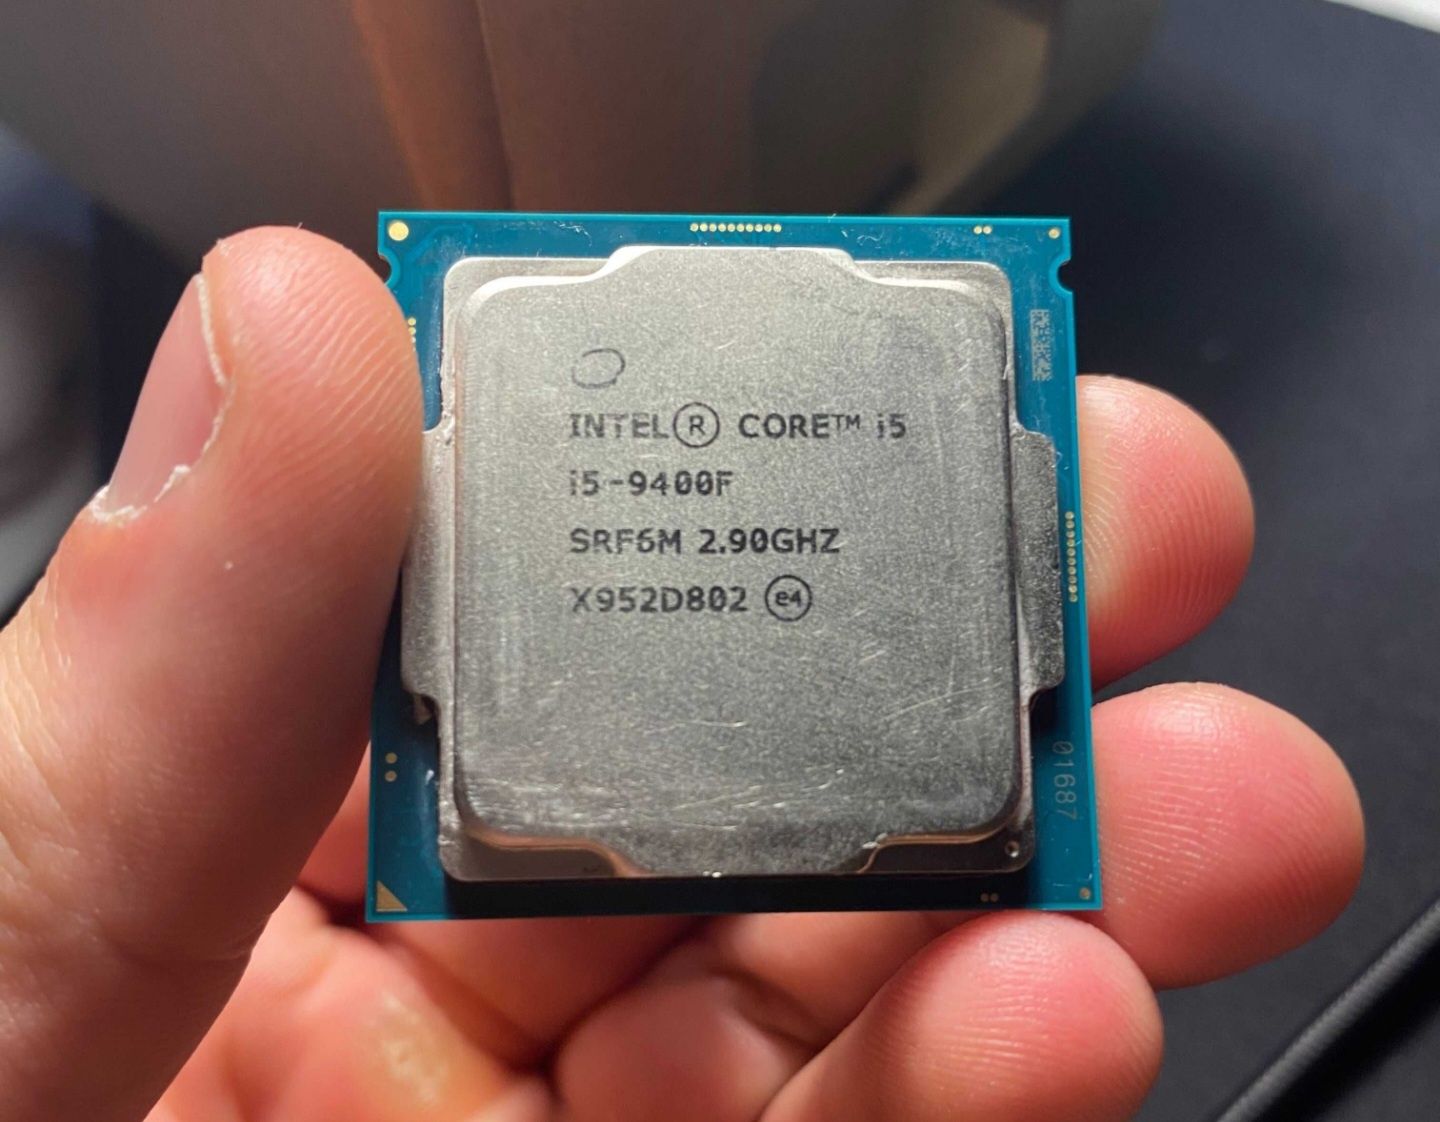 Processador Intel® Core™ i5-9400F
cache de 9 M, até 4,10 GHz